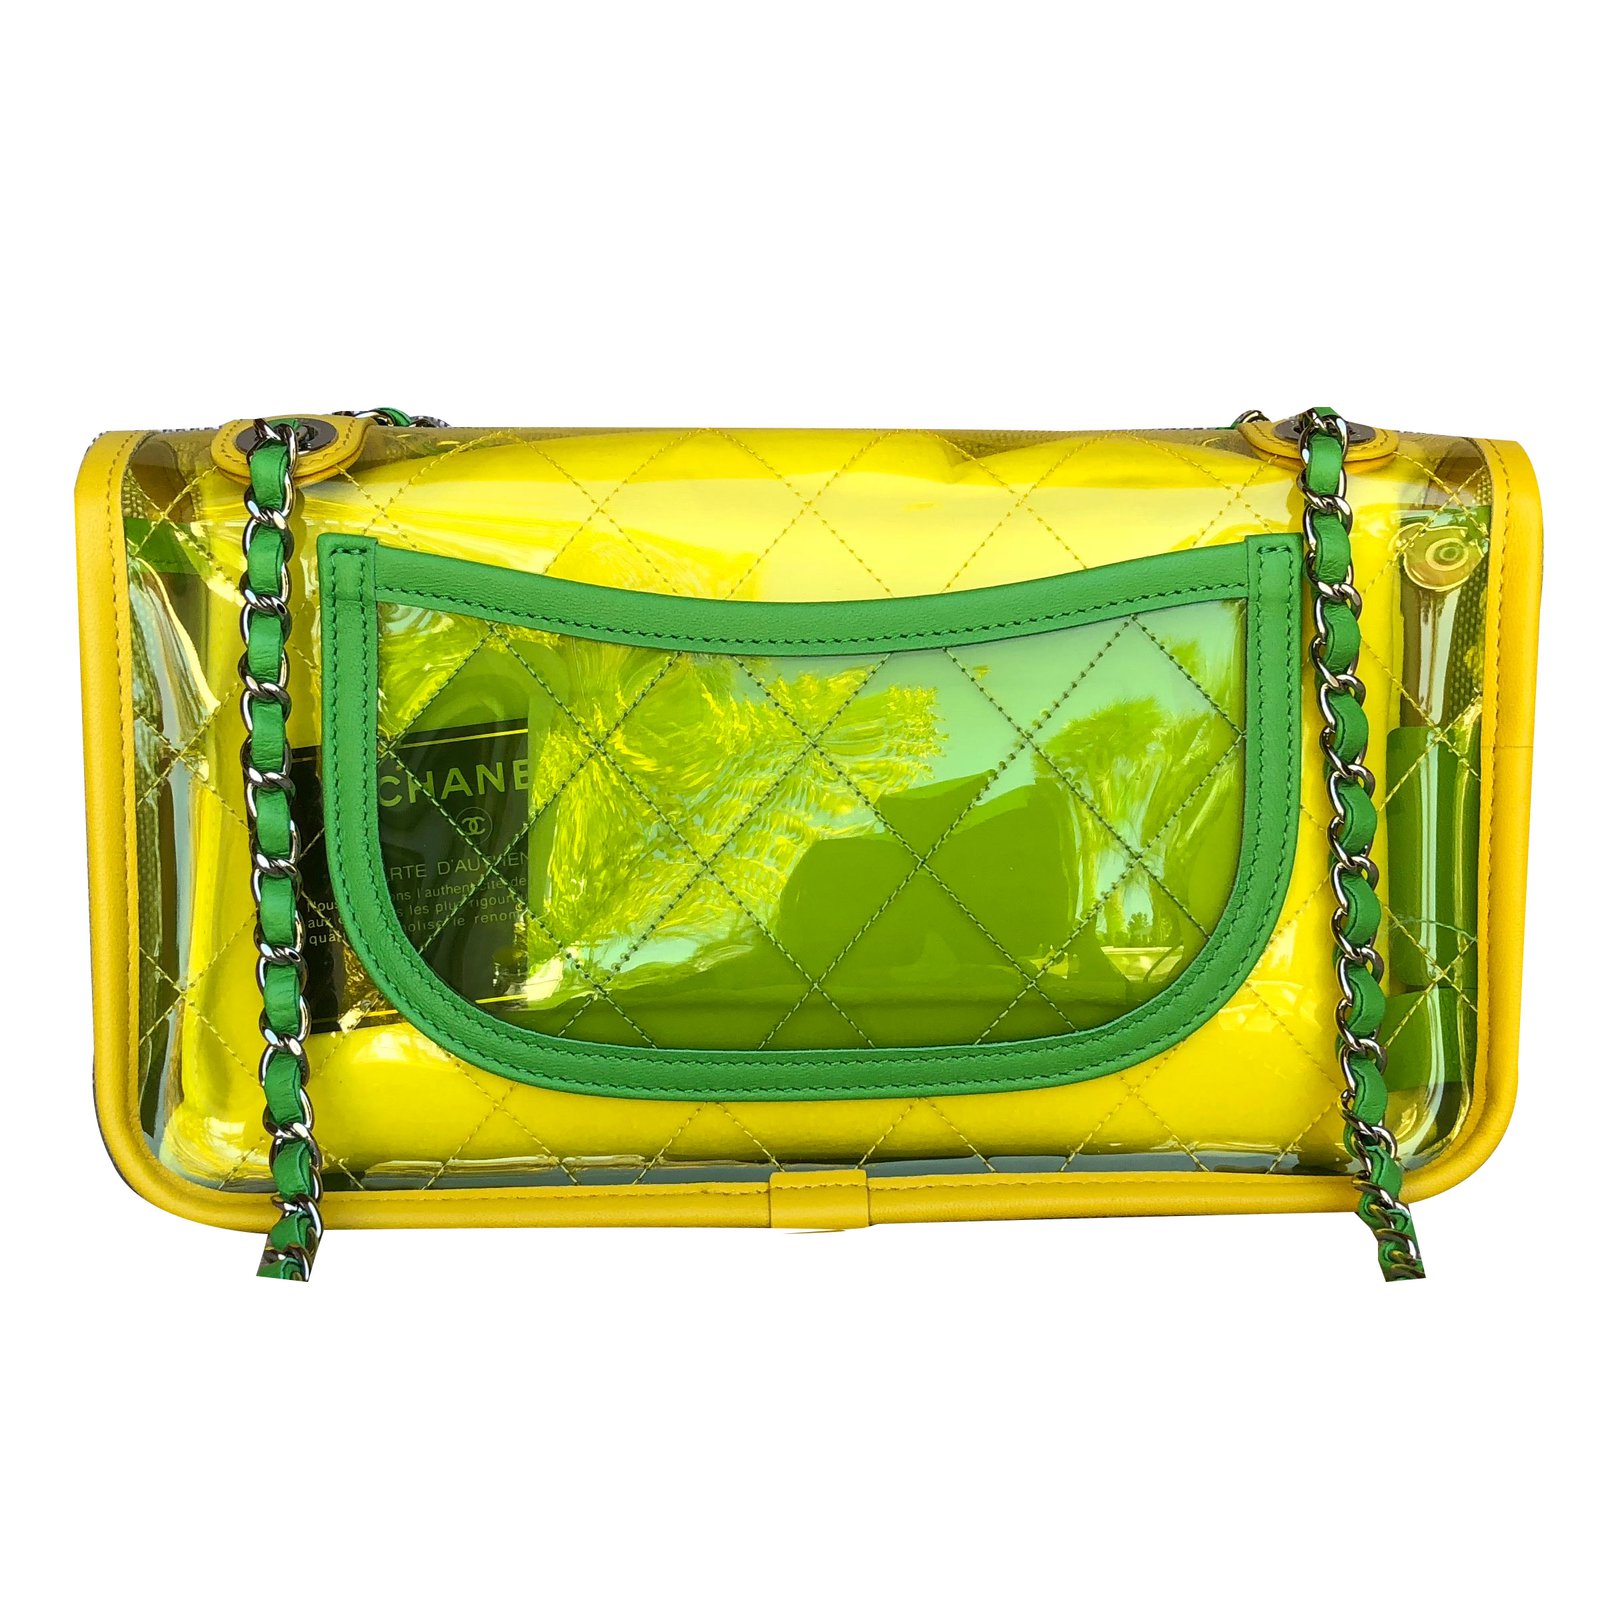 Chanel Pastel Yellow PVC Flap Bag